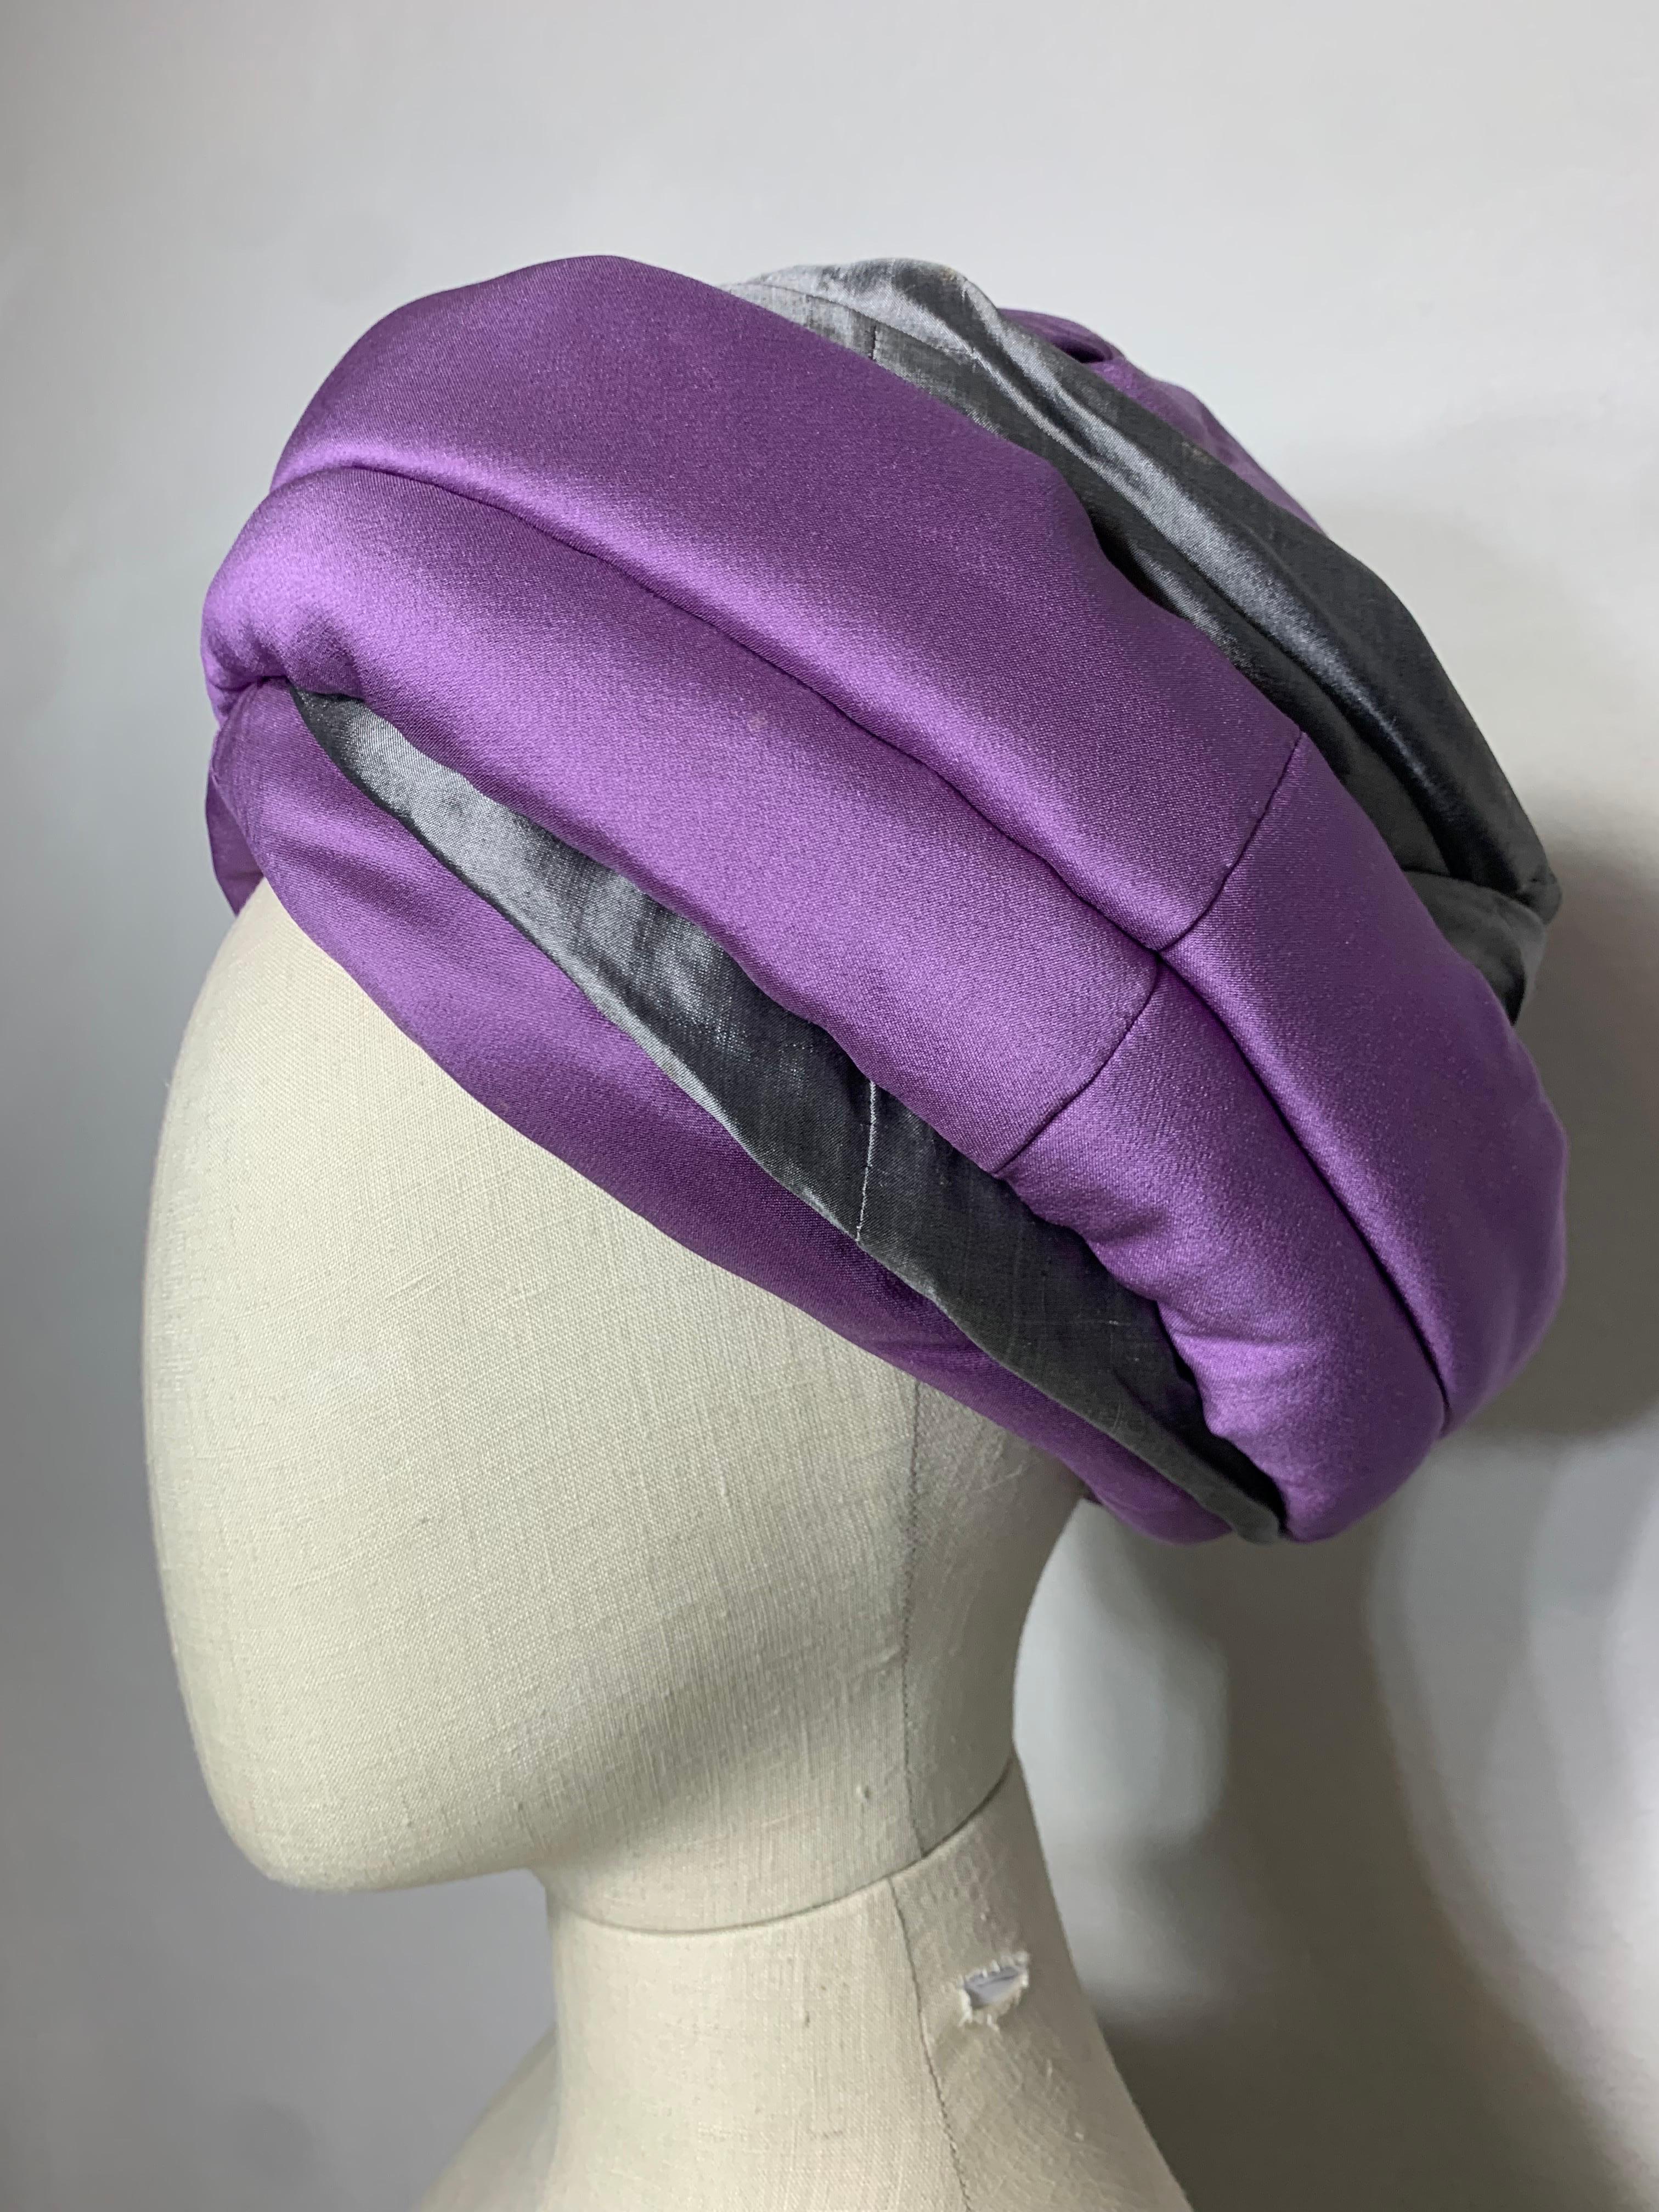 Toque Turban avec épingle à chapeau, fait sur mesure par Suzanne Couture Millinery, violet et gris, touffeté et drapé : Couronne légèrement bombée. Structuré sur une base en bougran pour lui donner de la hauteur et du style. La peau de requin en